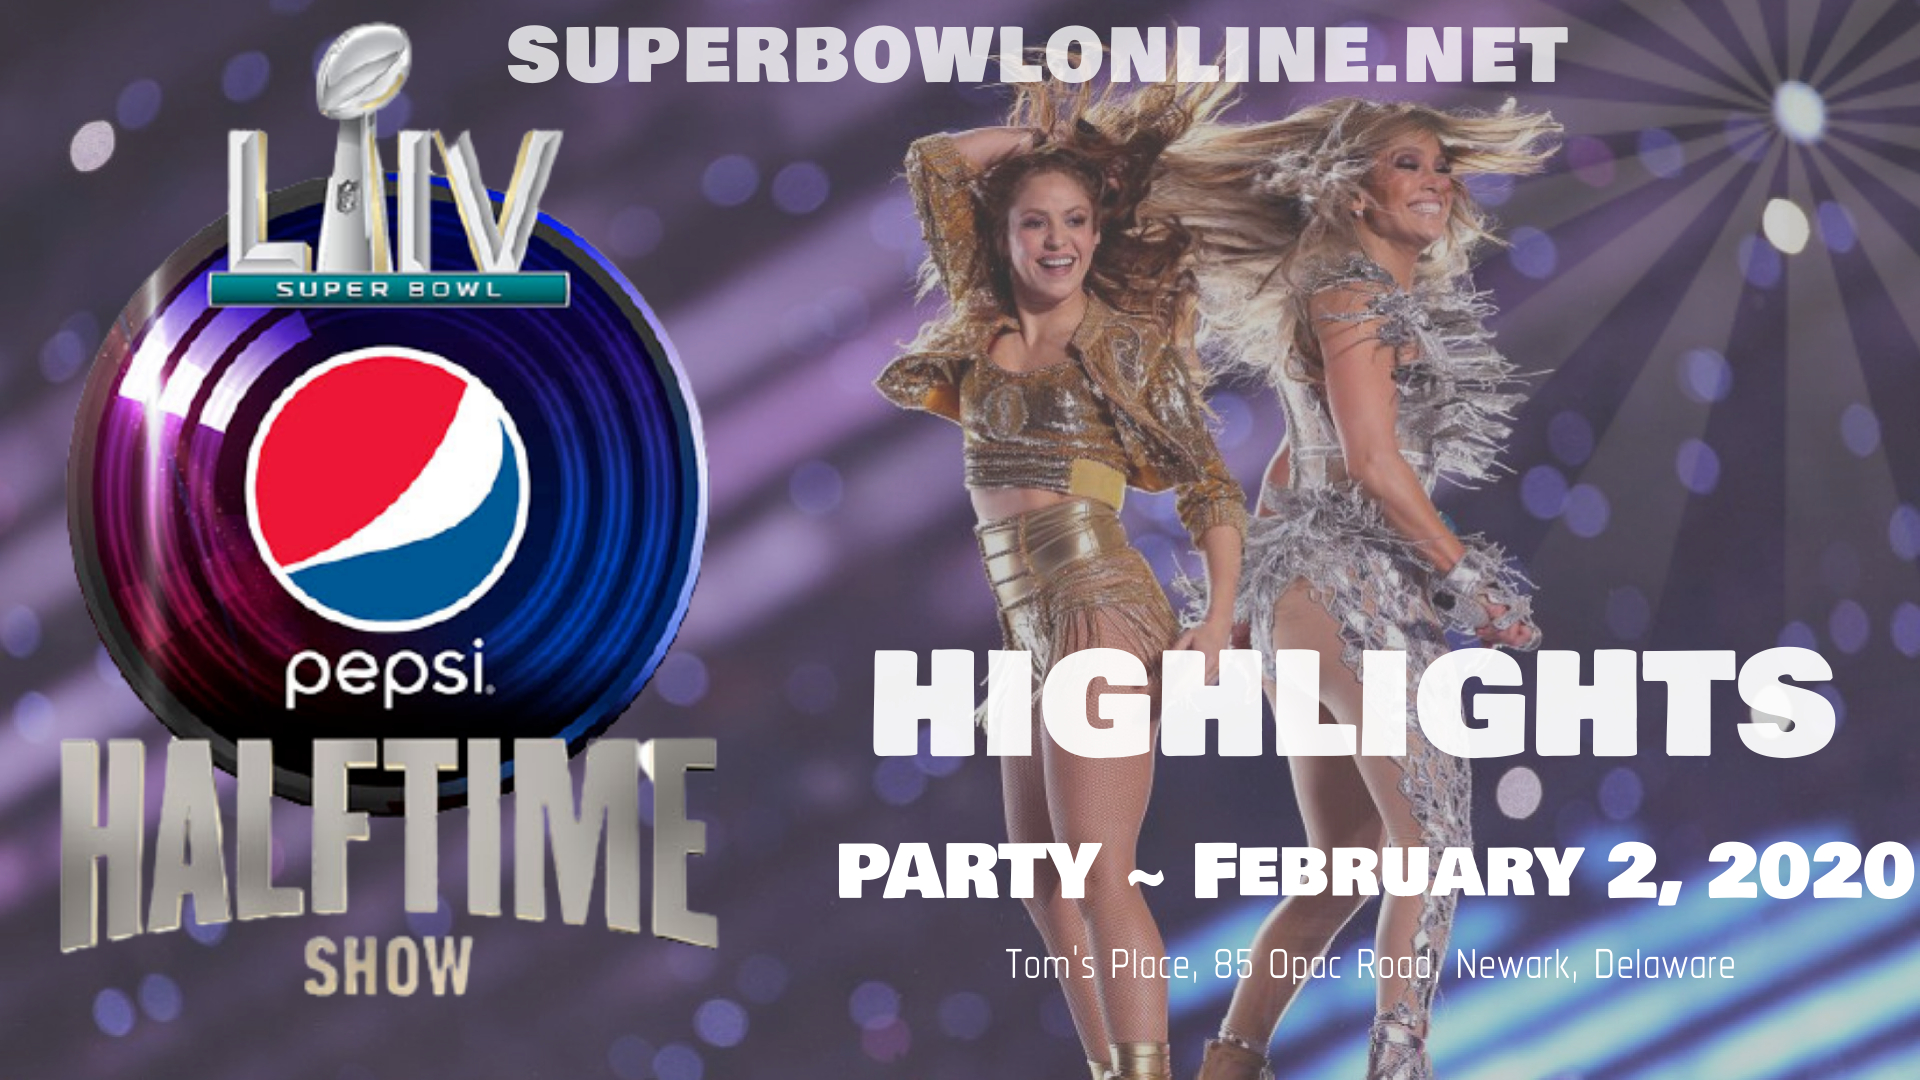 Super Bowl 54 HalfTime Show 2020 Highlights